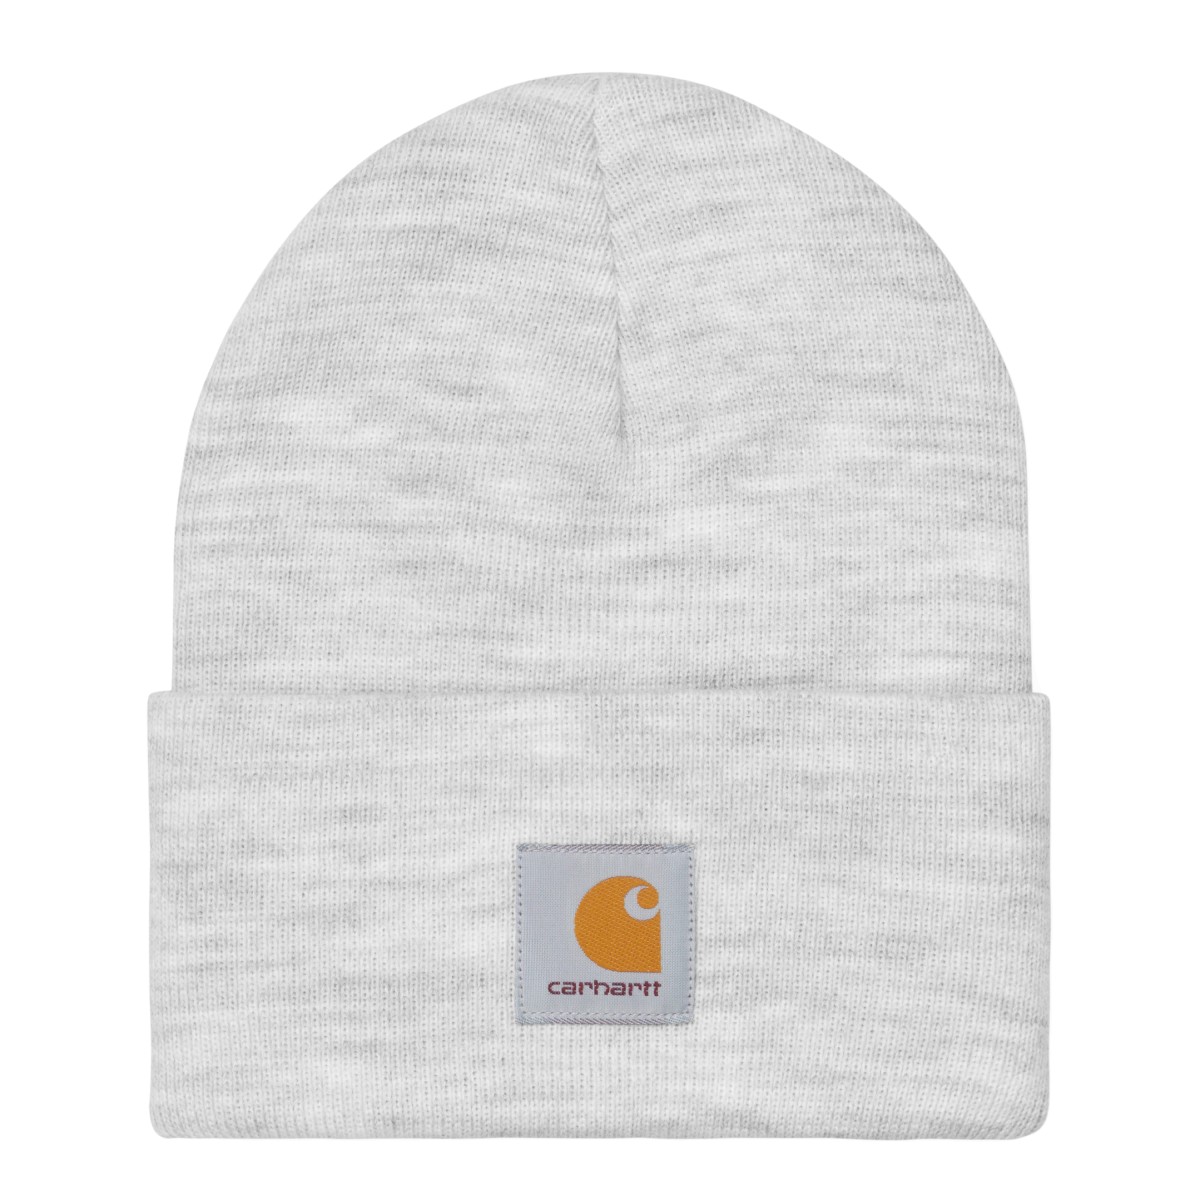 Carhartt - Bonnet gris clair watch hat